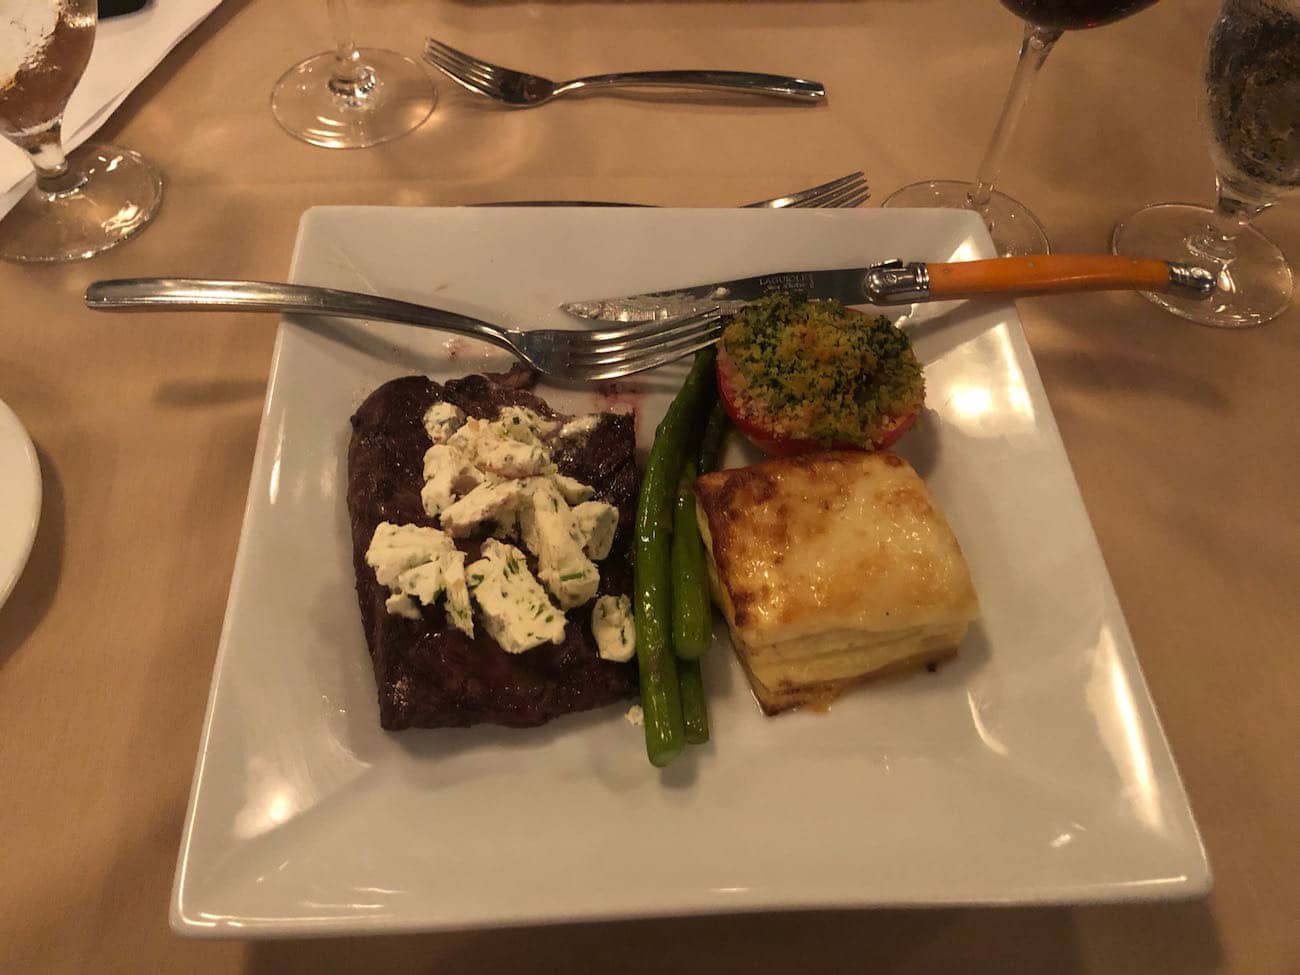 Steak Dinner at Brasserie Provence